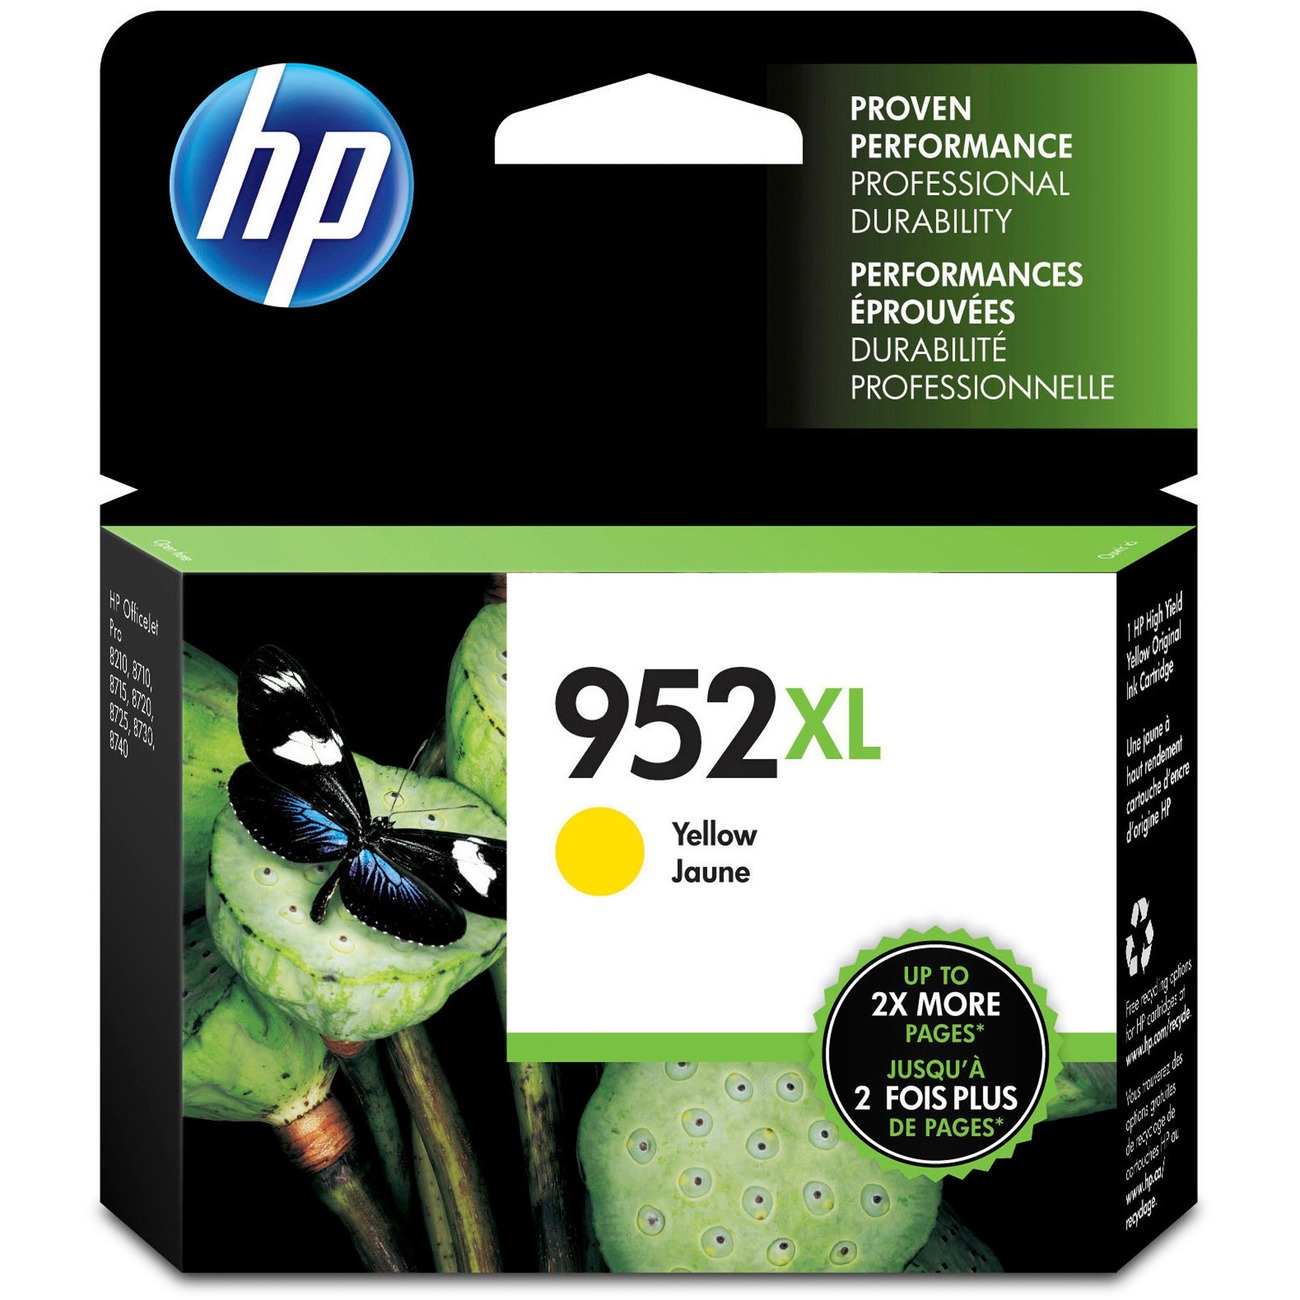 HP953xl: 4 cartouches compatibles pour HP OfficeJet Pro 8710 8720